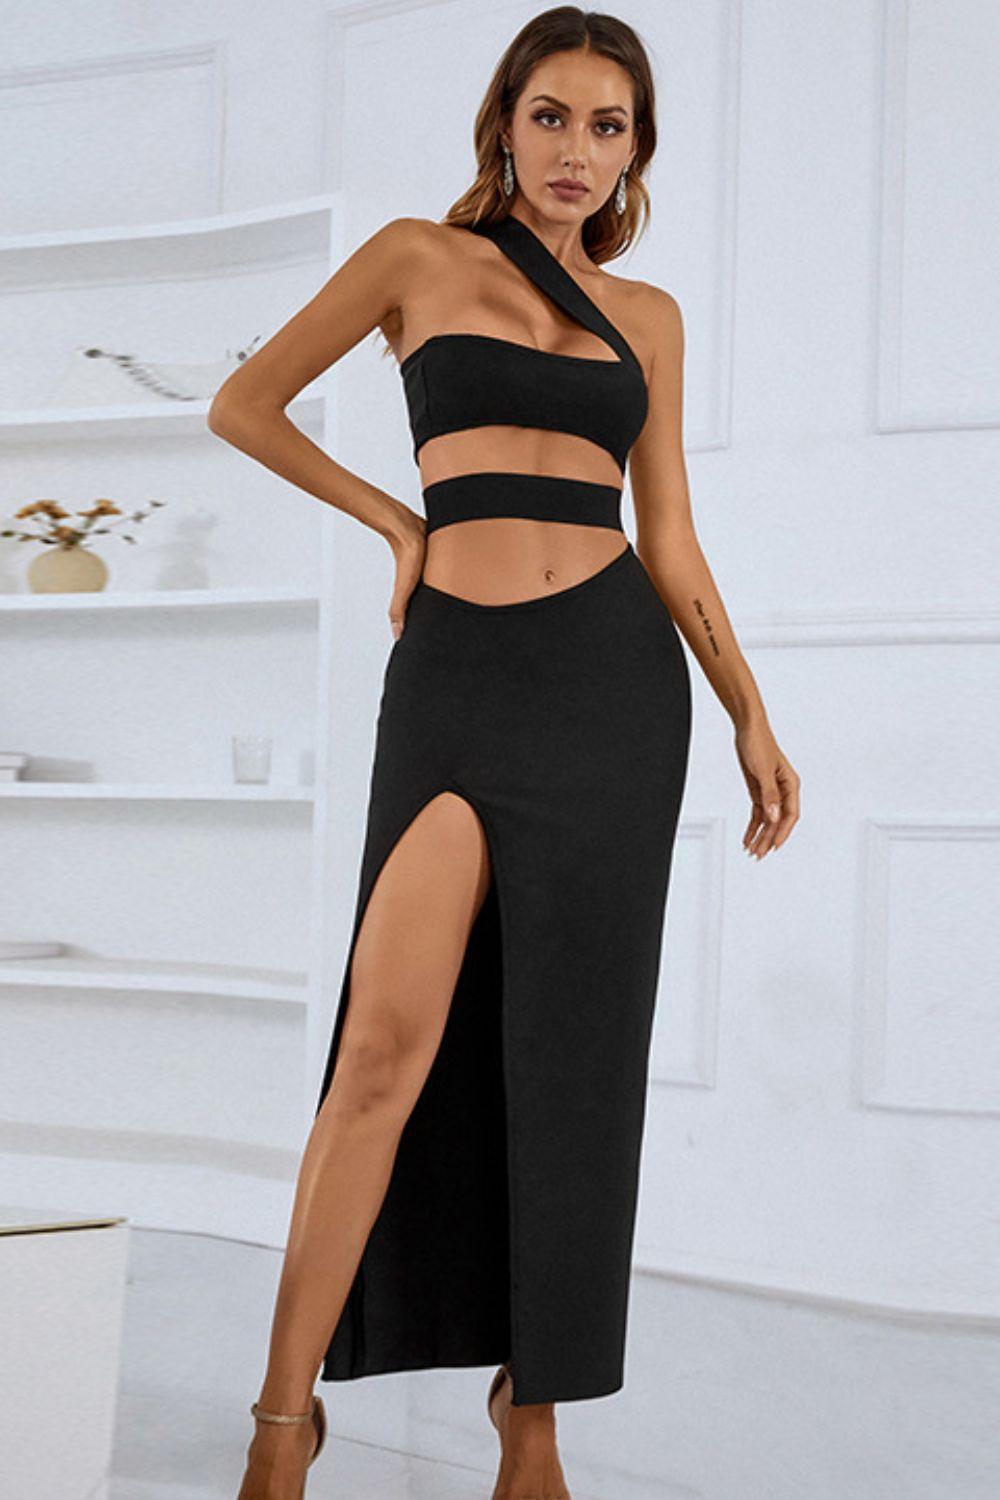 Irresistible Black One-Shoulder Cutout Dress - MXSTUDIO.COM